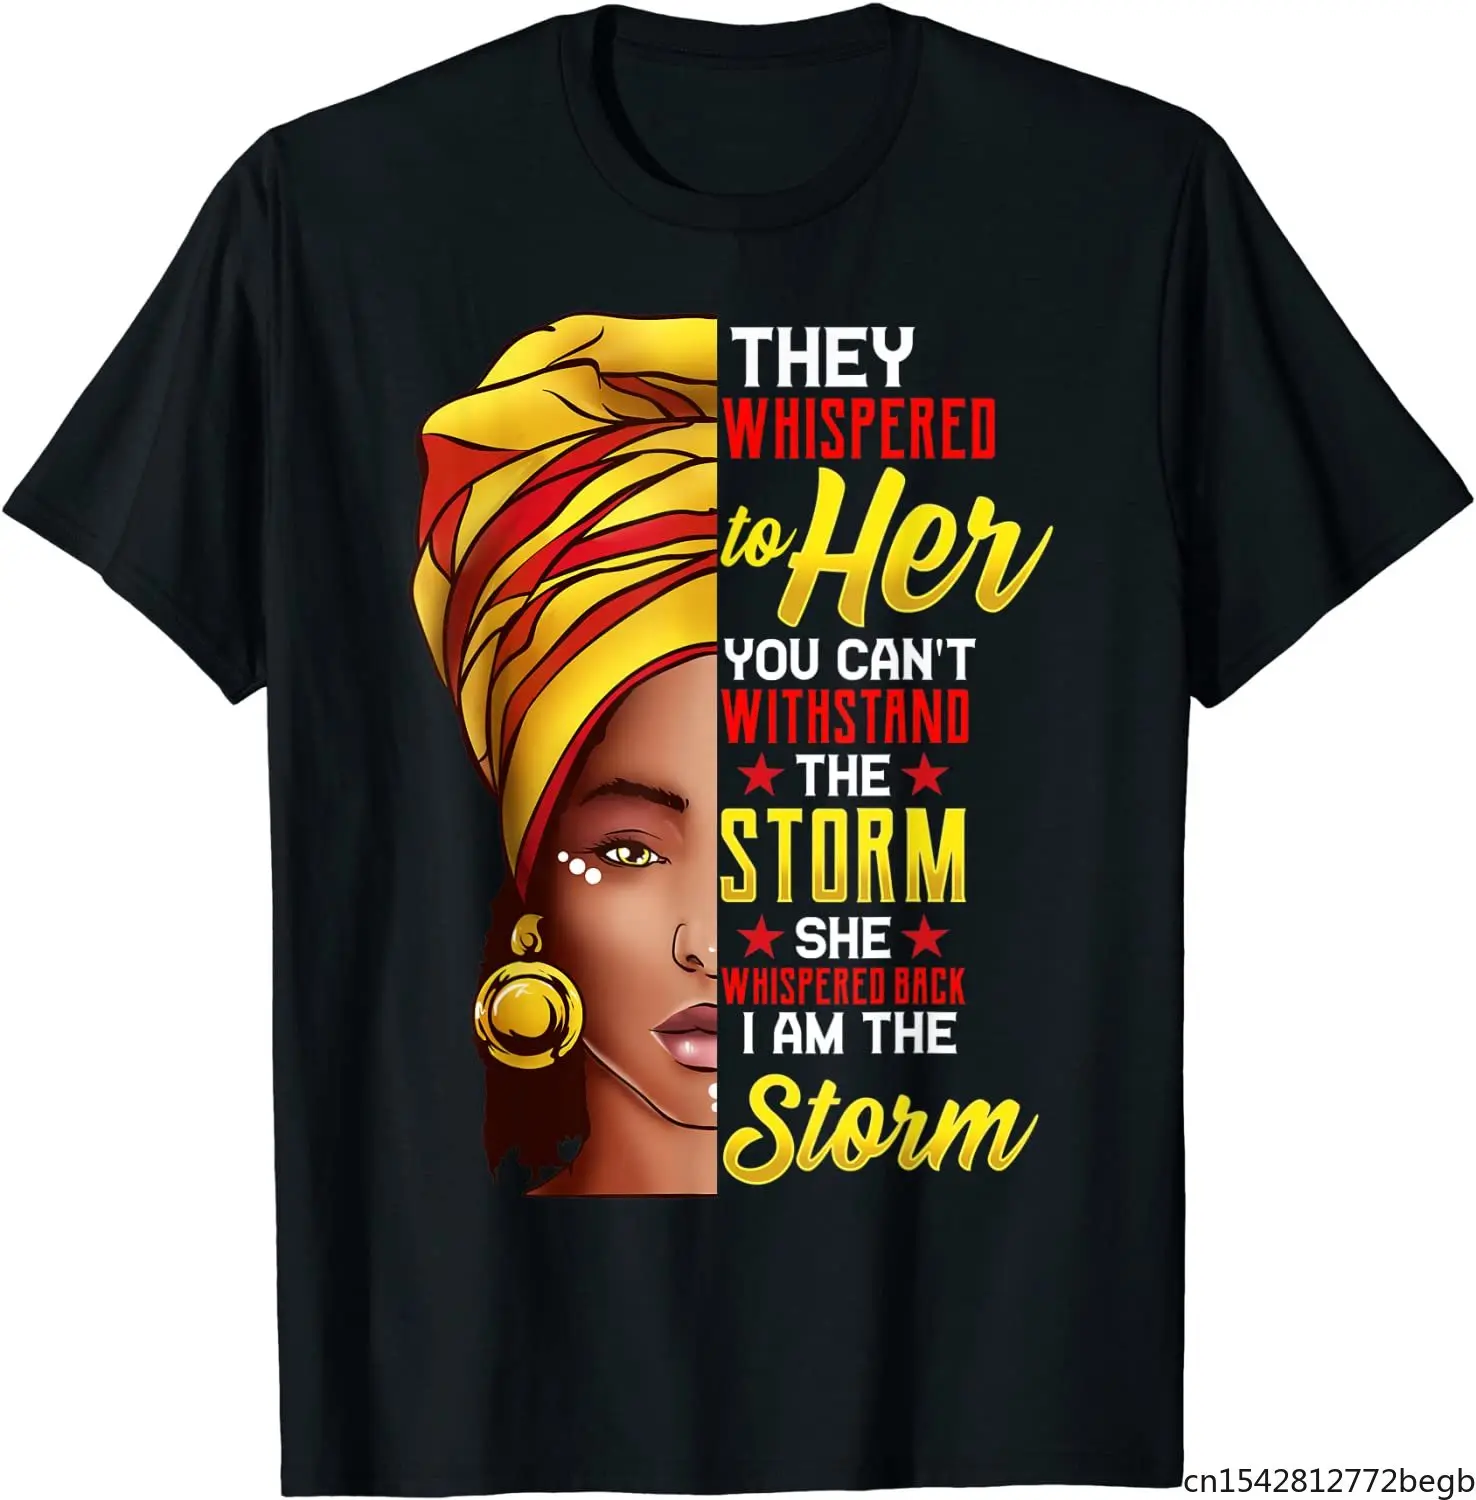 

Мужская футболка в стиле ретро для Африканской женщины с надписью I Am The Storm